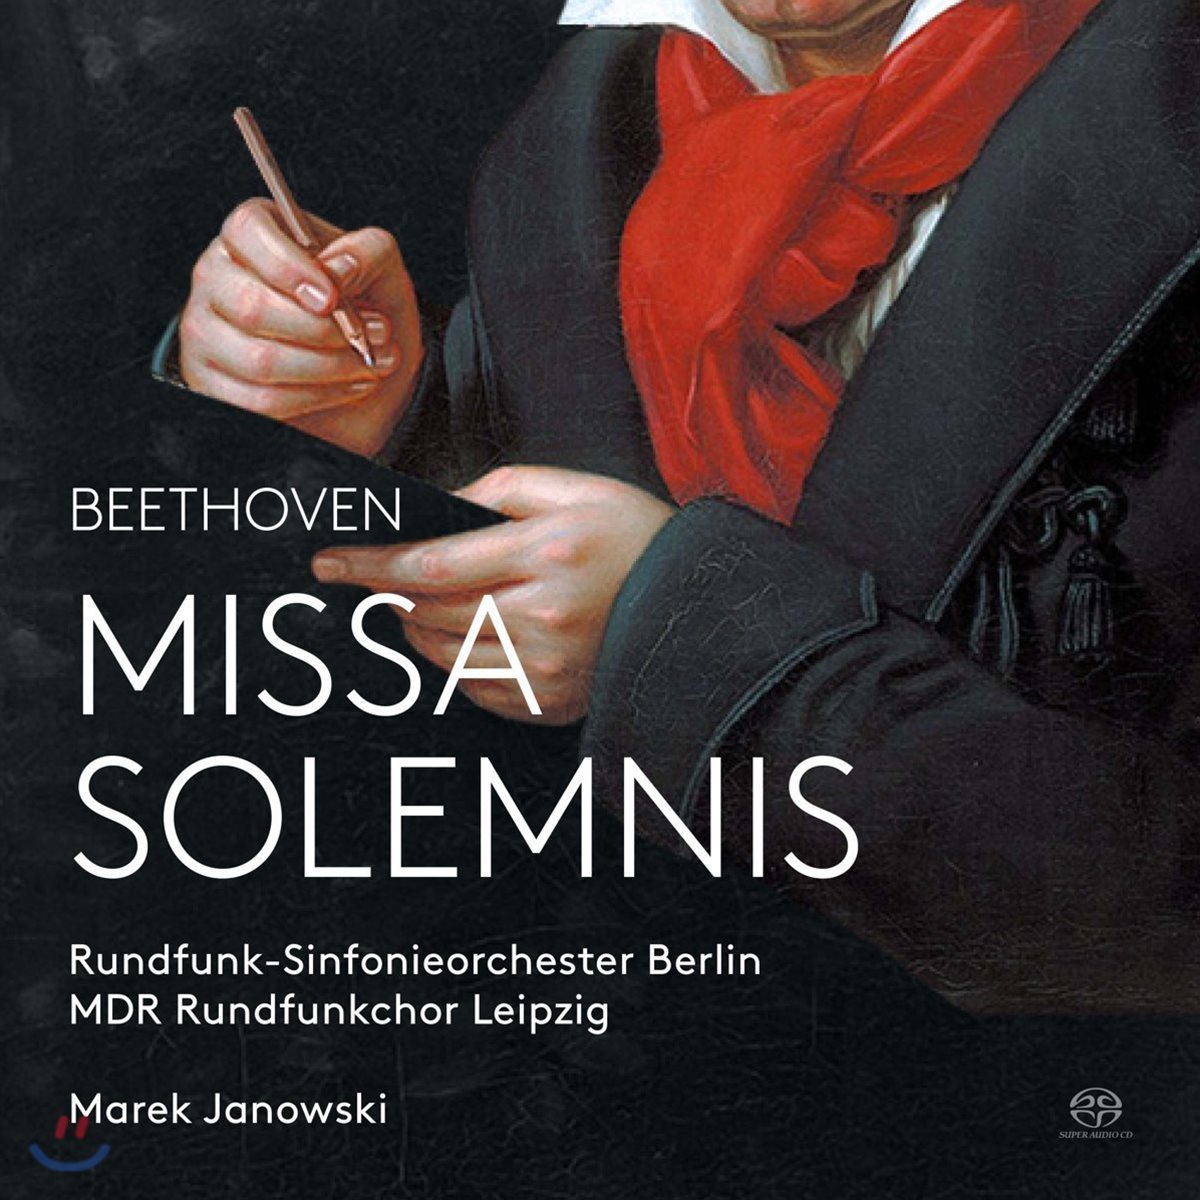 Marek Janowski 베토벤: 장엄미사 D장조 Op. 123 - 라이프치히 중부 독일 방송 합창단, 베를린 방송 교향악단, 마렉 야노프스키 (Beethoven: Missa Solemnis in D major)